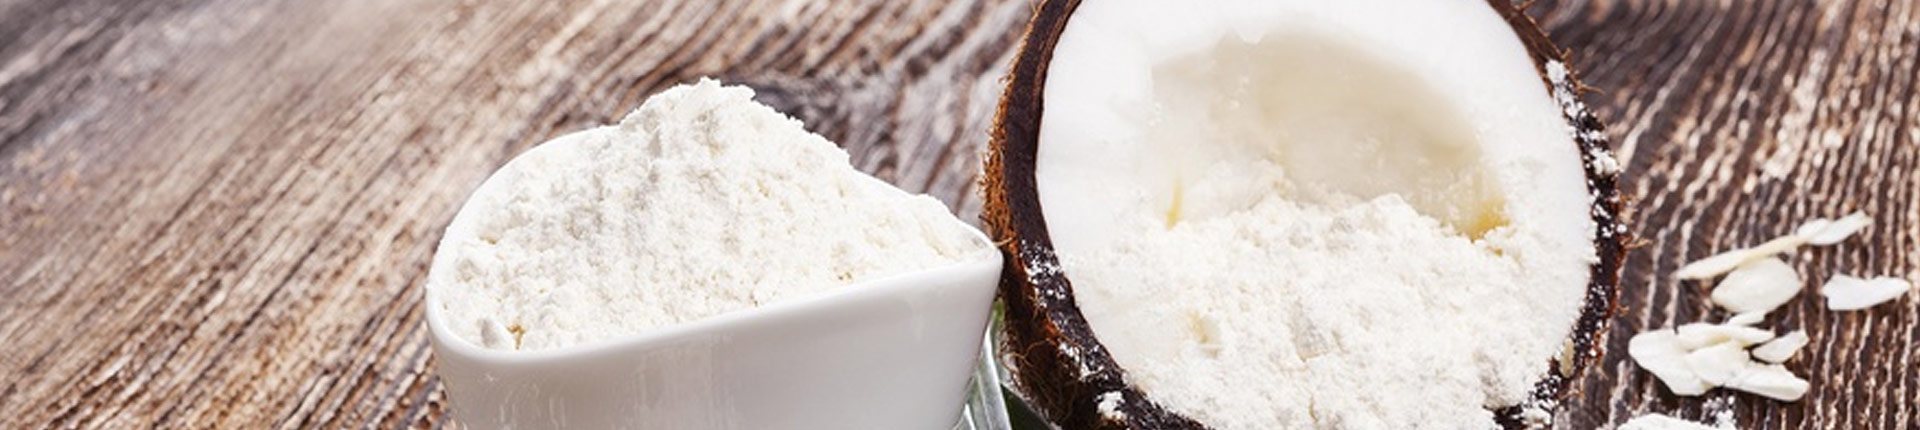 Mąka kokosowa - właściwości